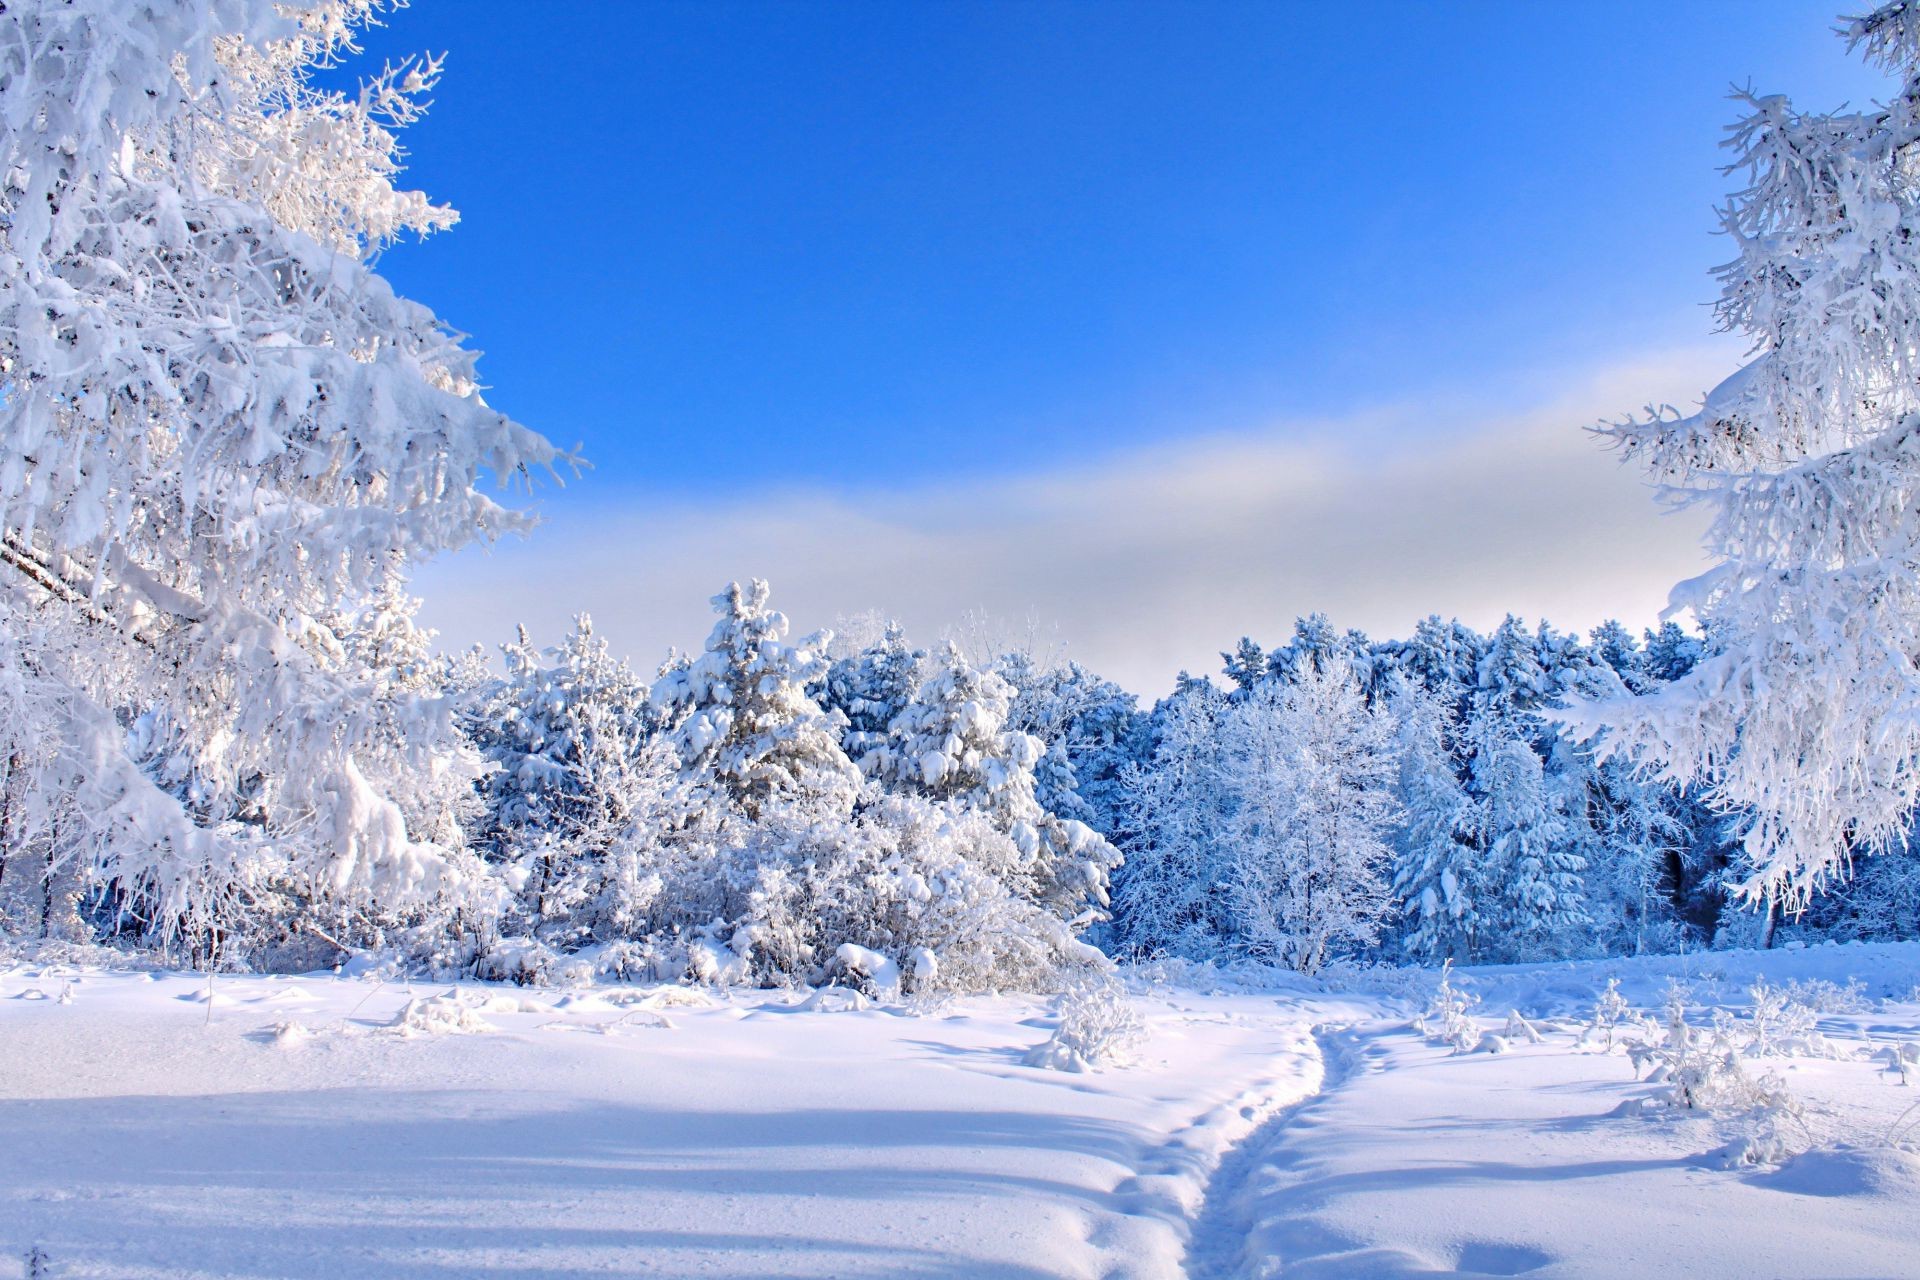 зима снег холодная мороз лед замороженные живописный сезон морозный древесины пейзаж ледяной дерево погода снежное горы холодок снег-белый хорошую погоду